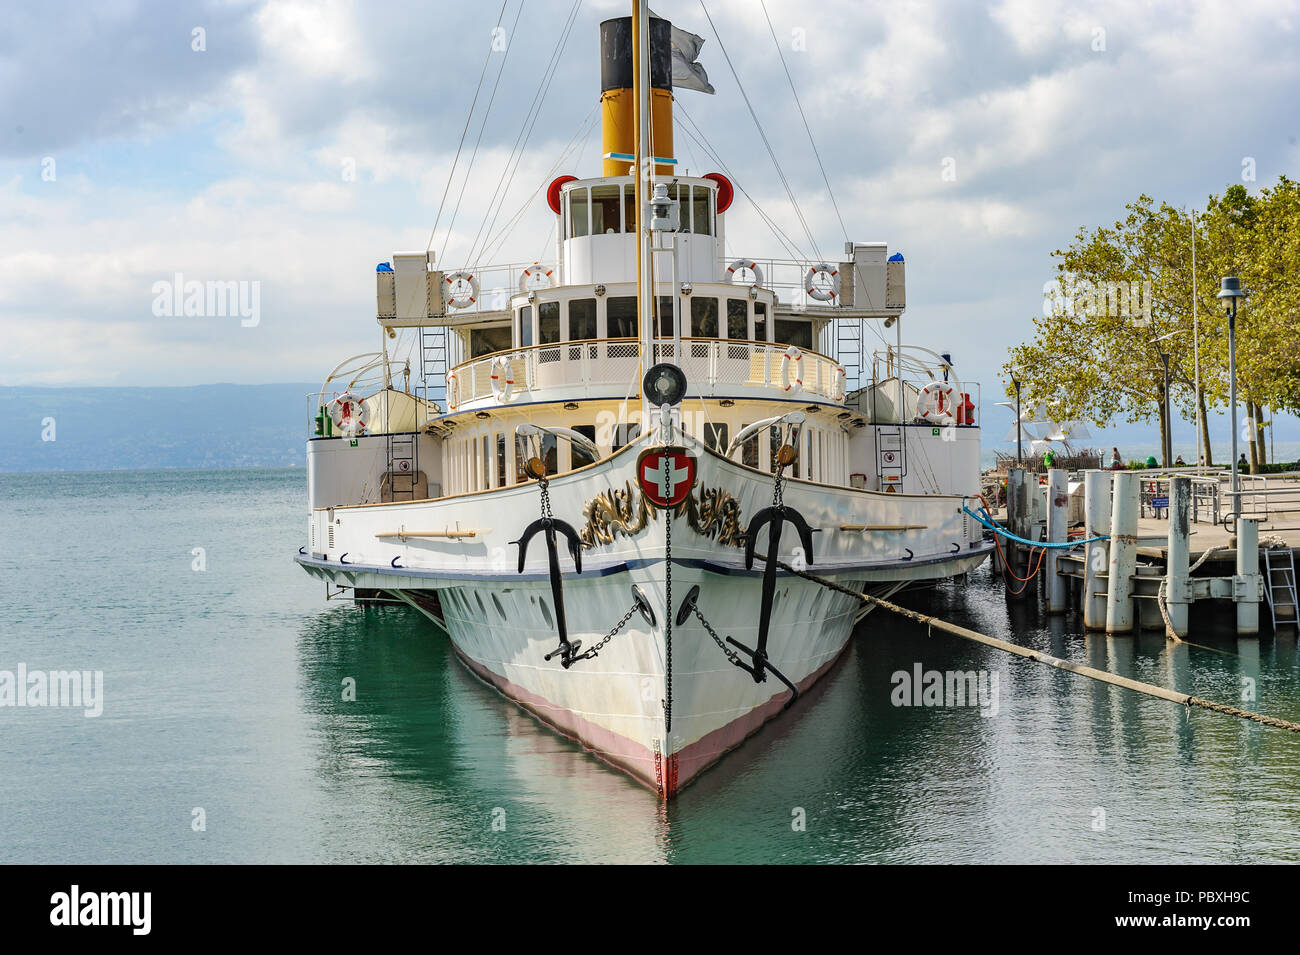 Un bateau à aubes, un unique et moderne, restauré comme traversier à vapeur de banlieue sur le lac de Genève, Suisse Banque D'Images